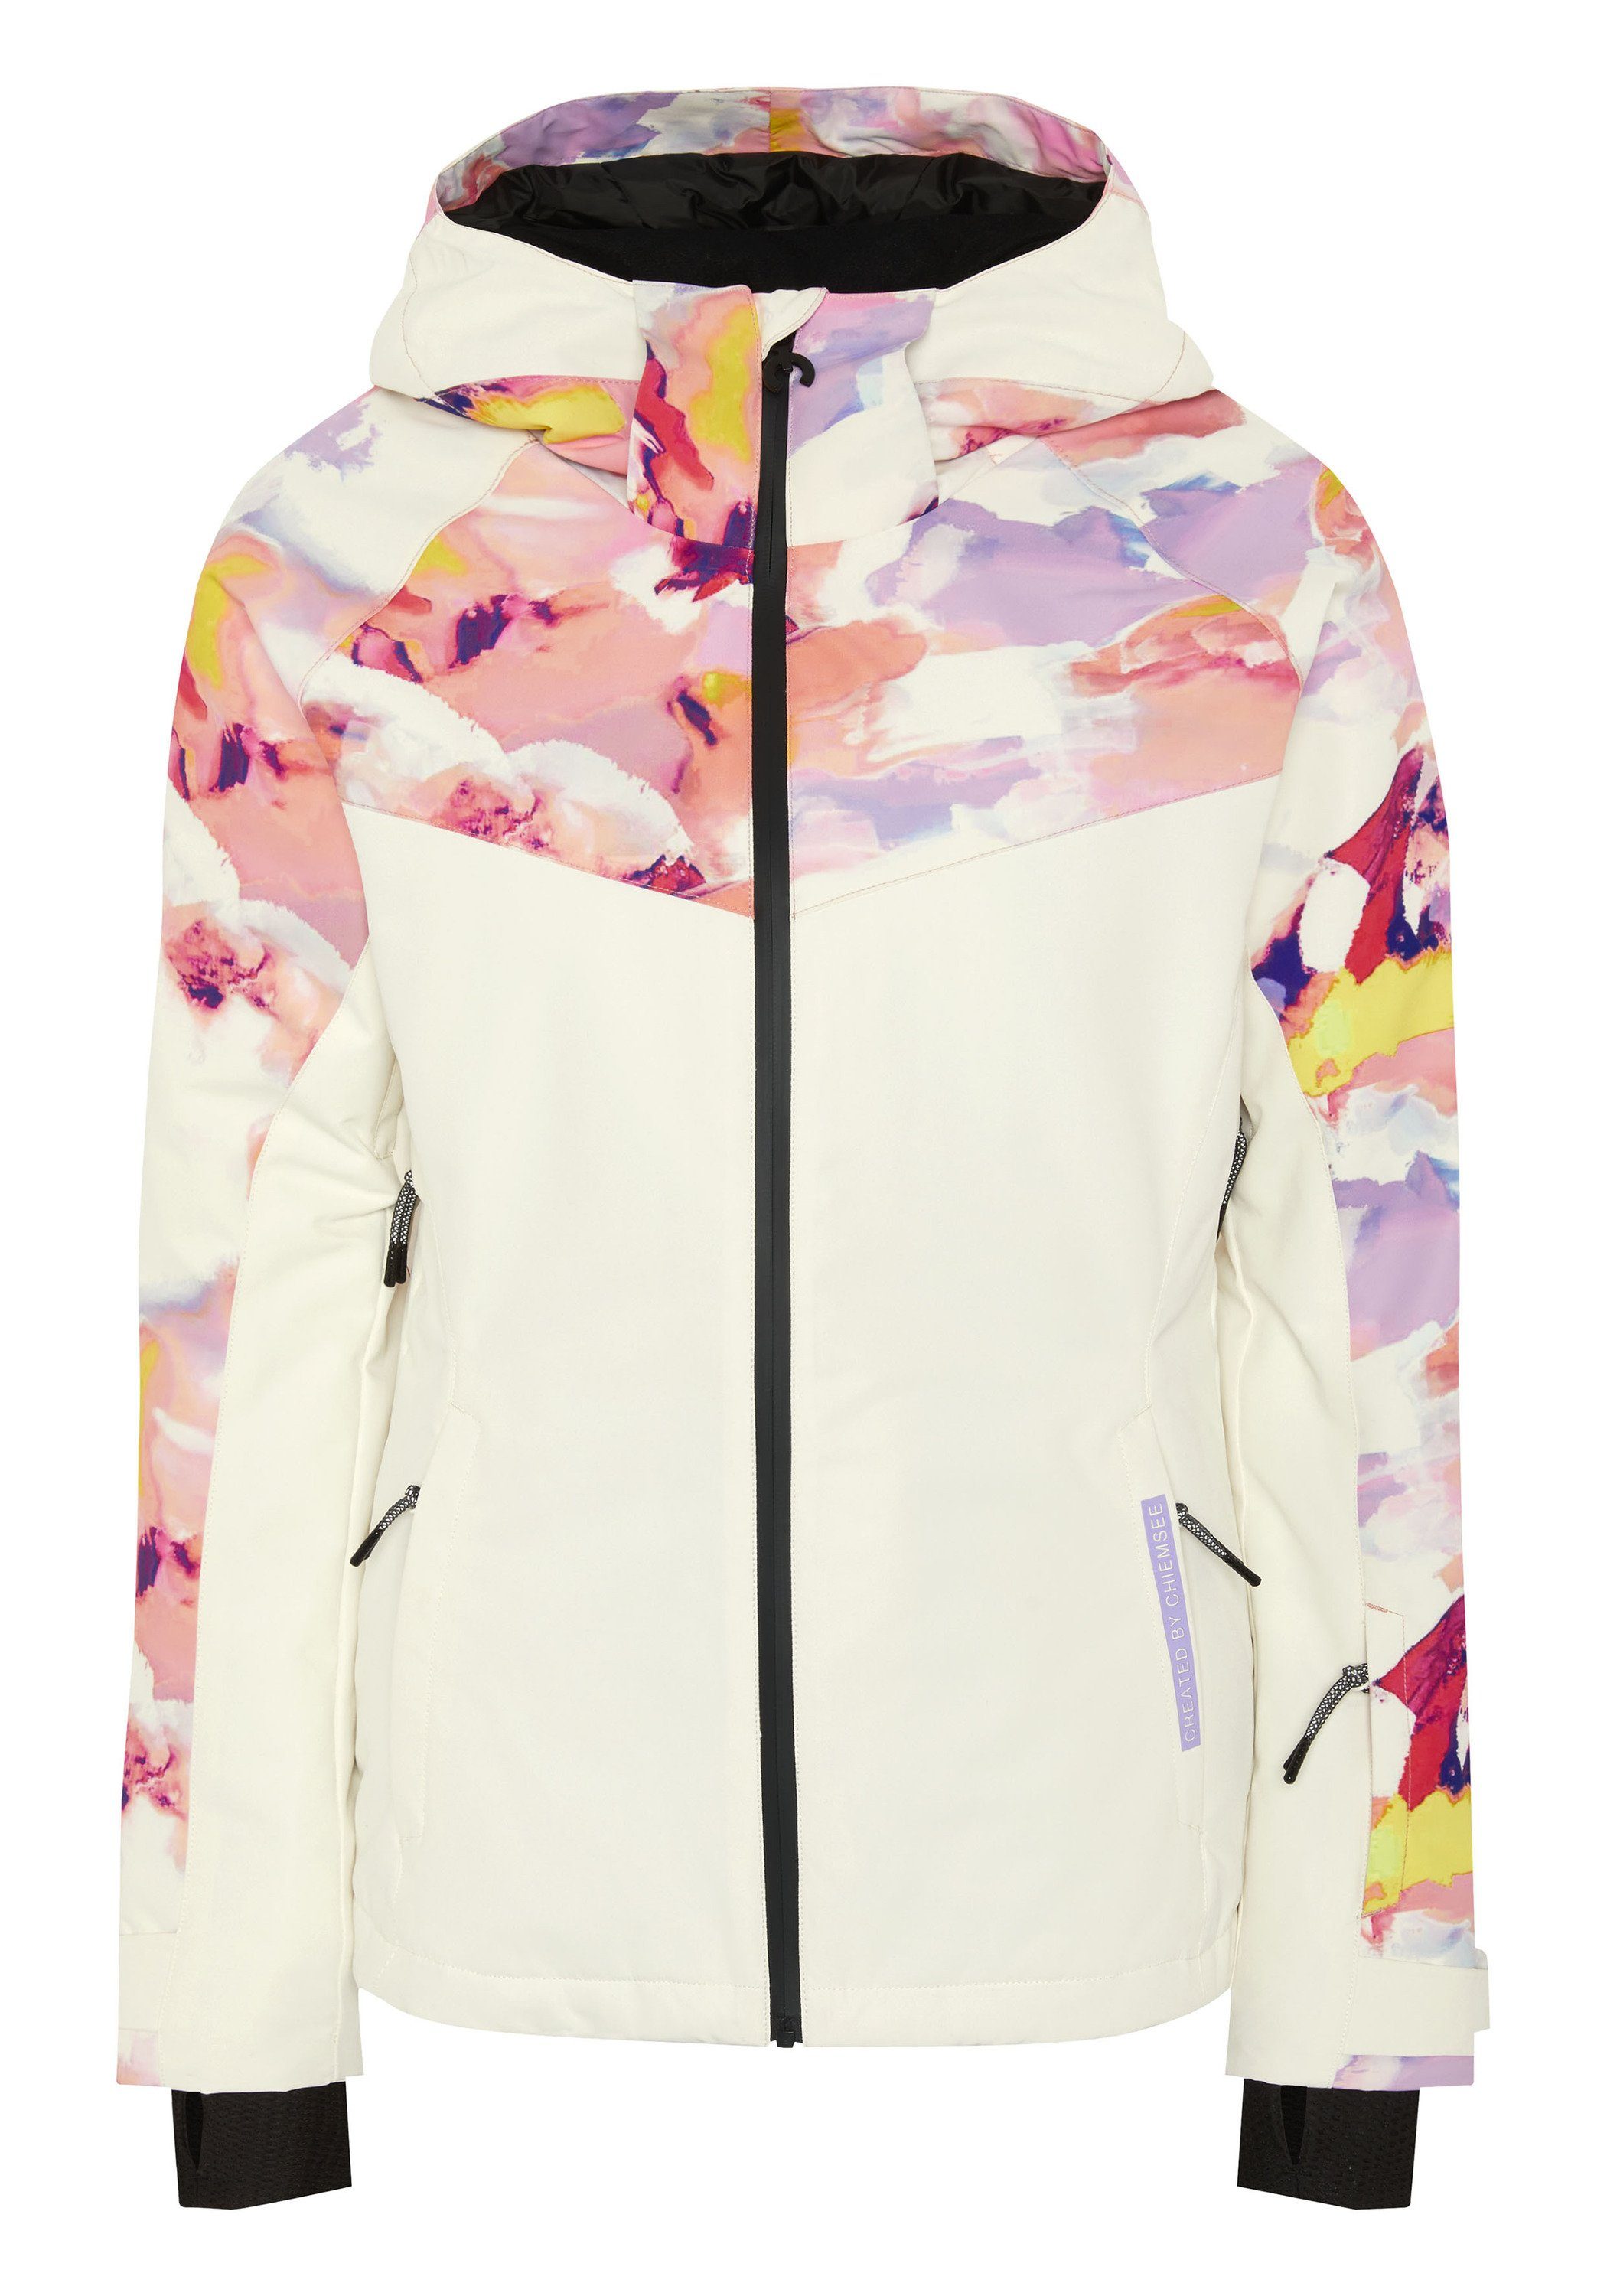 größter Versandhandel für Mode Chiemsee Skijacke Skijacke mit Alloverprint 1 Orange/Purple 2130